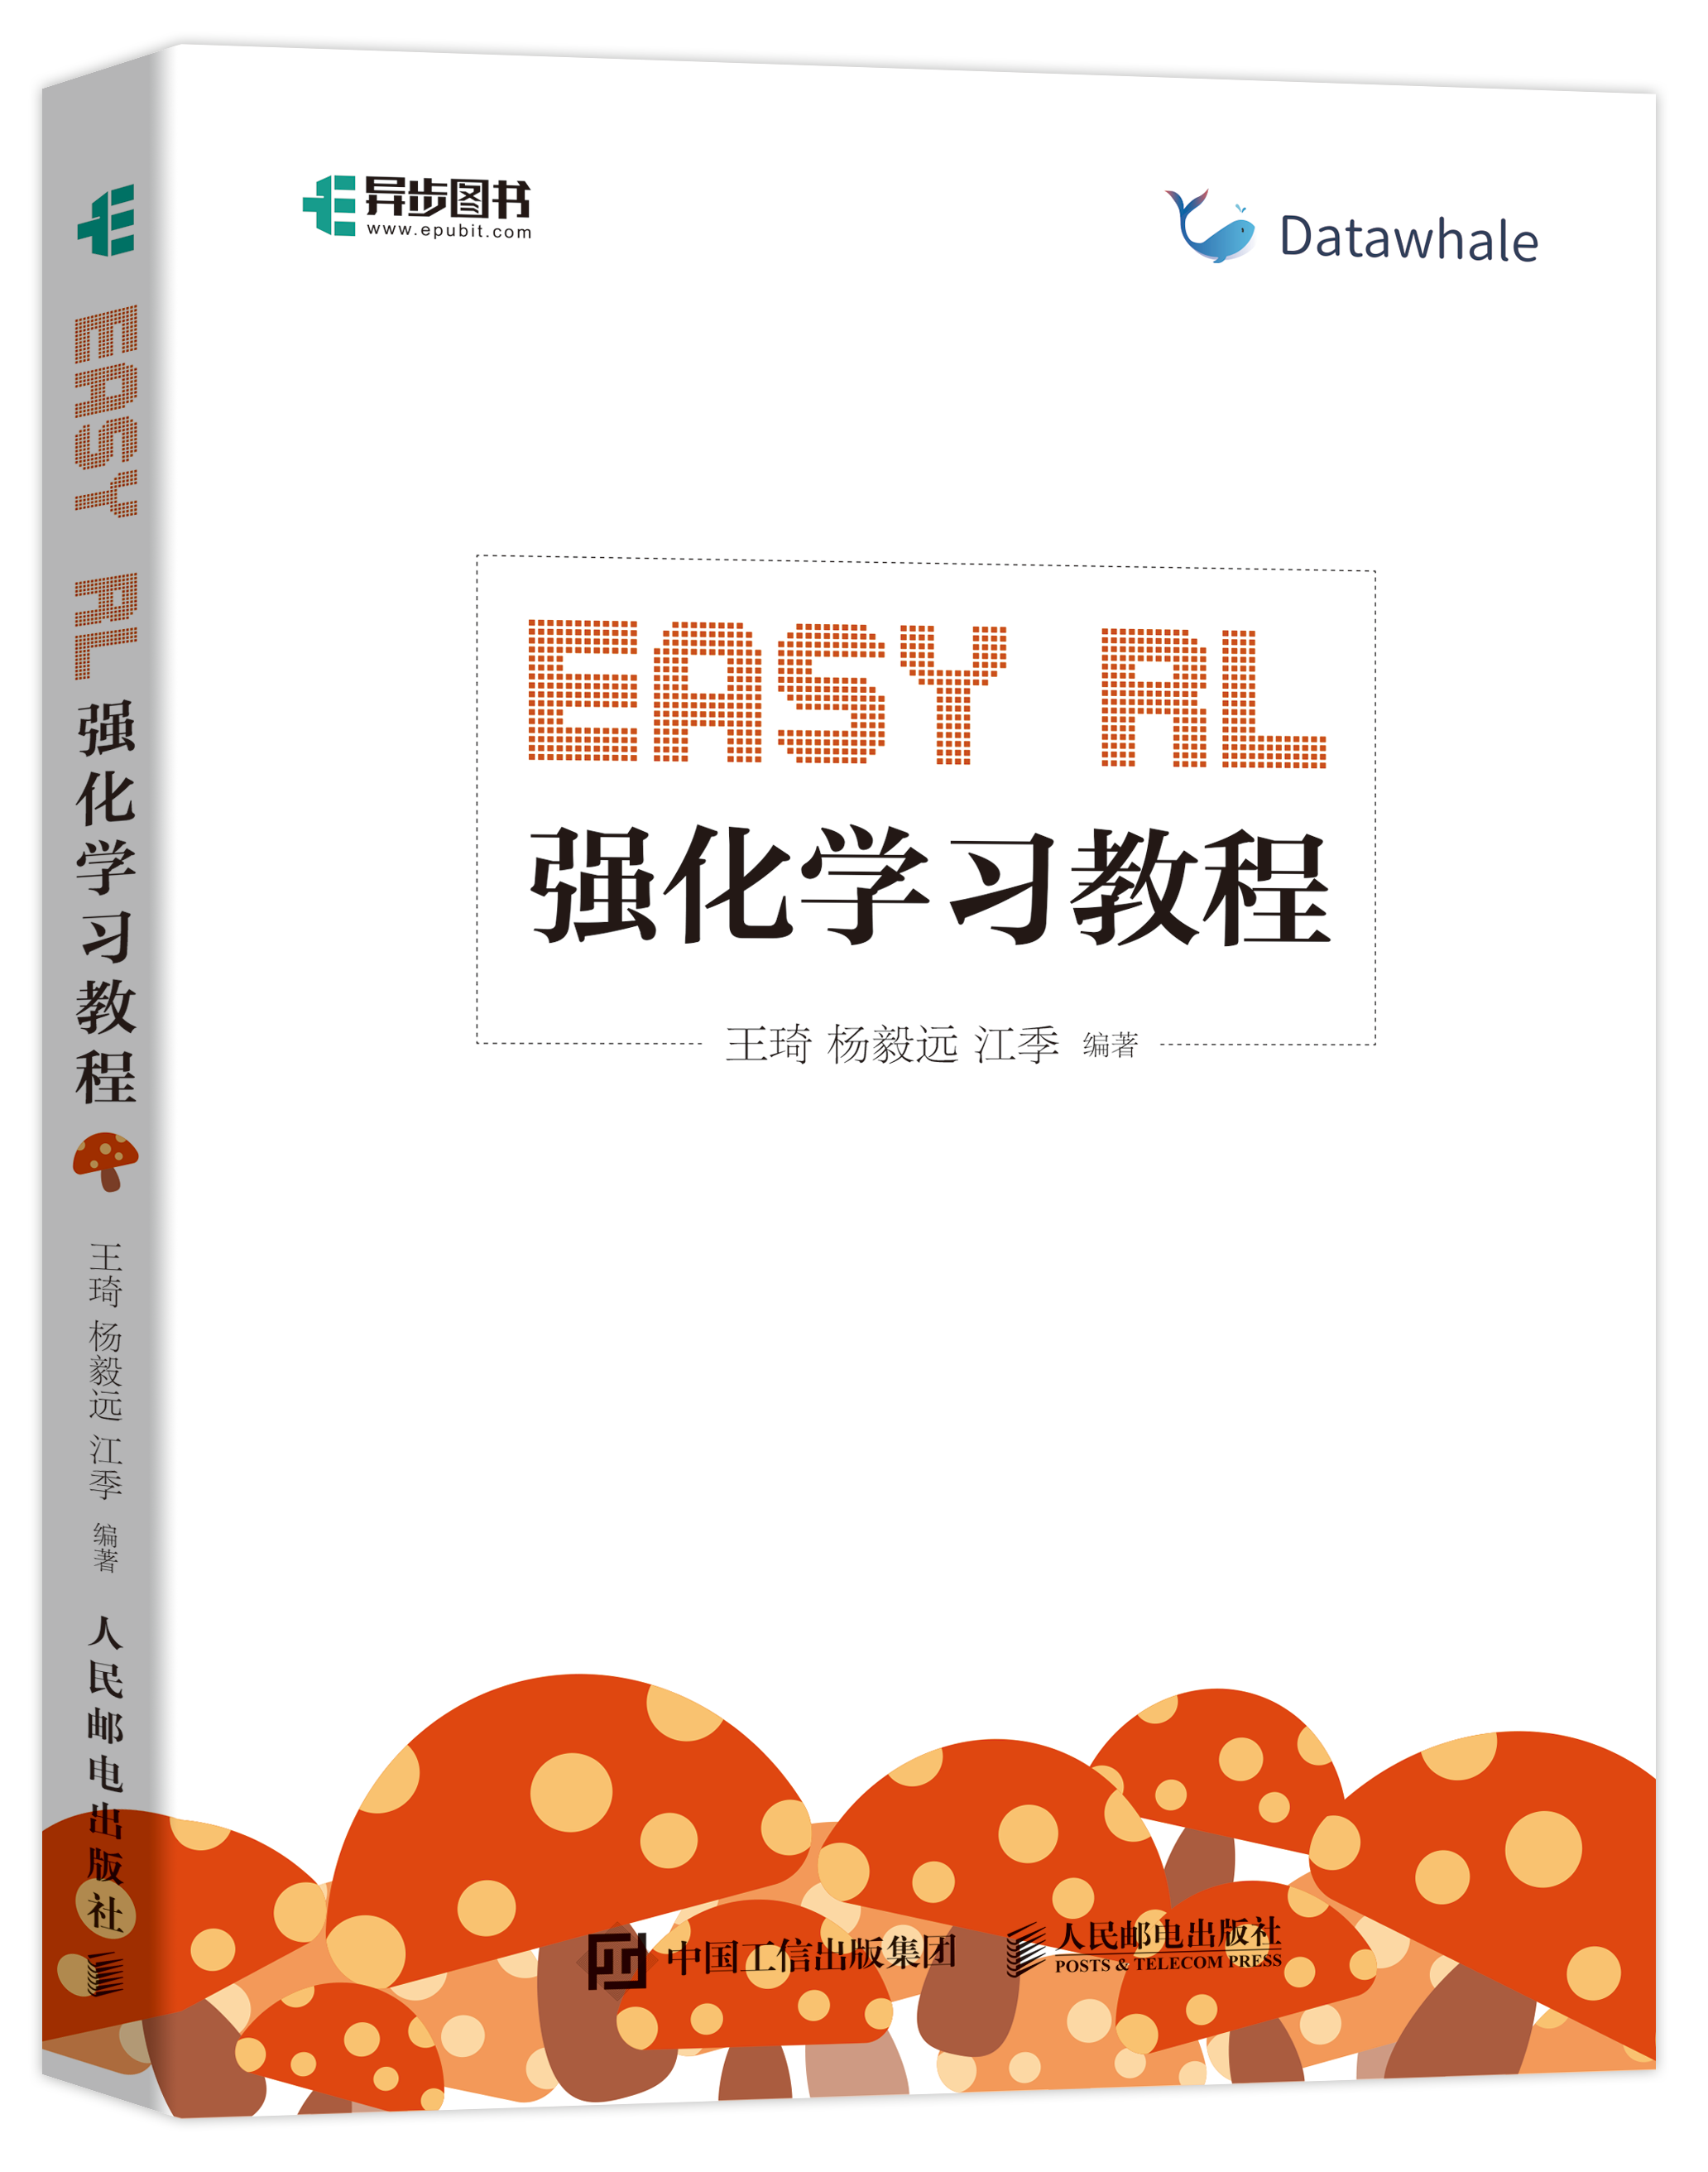 蘑菇书 Easy RL